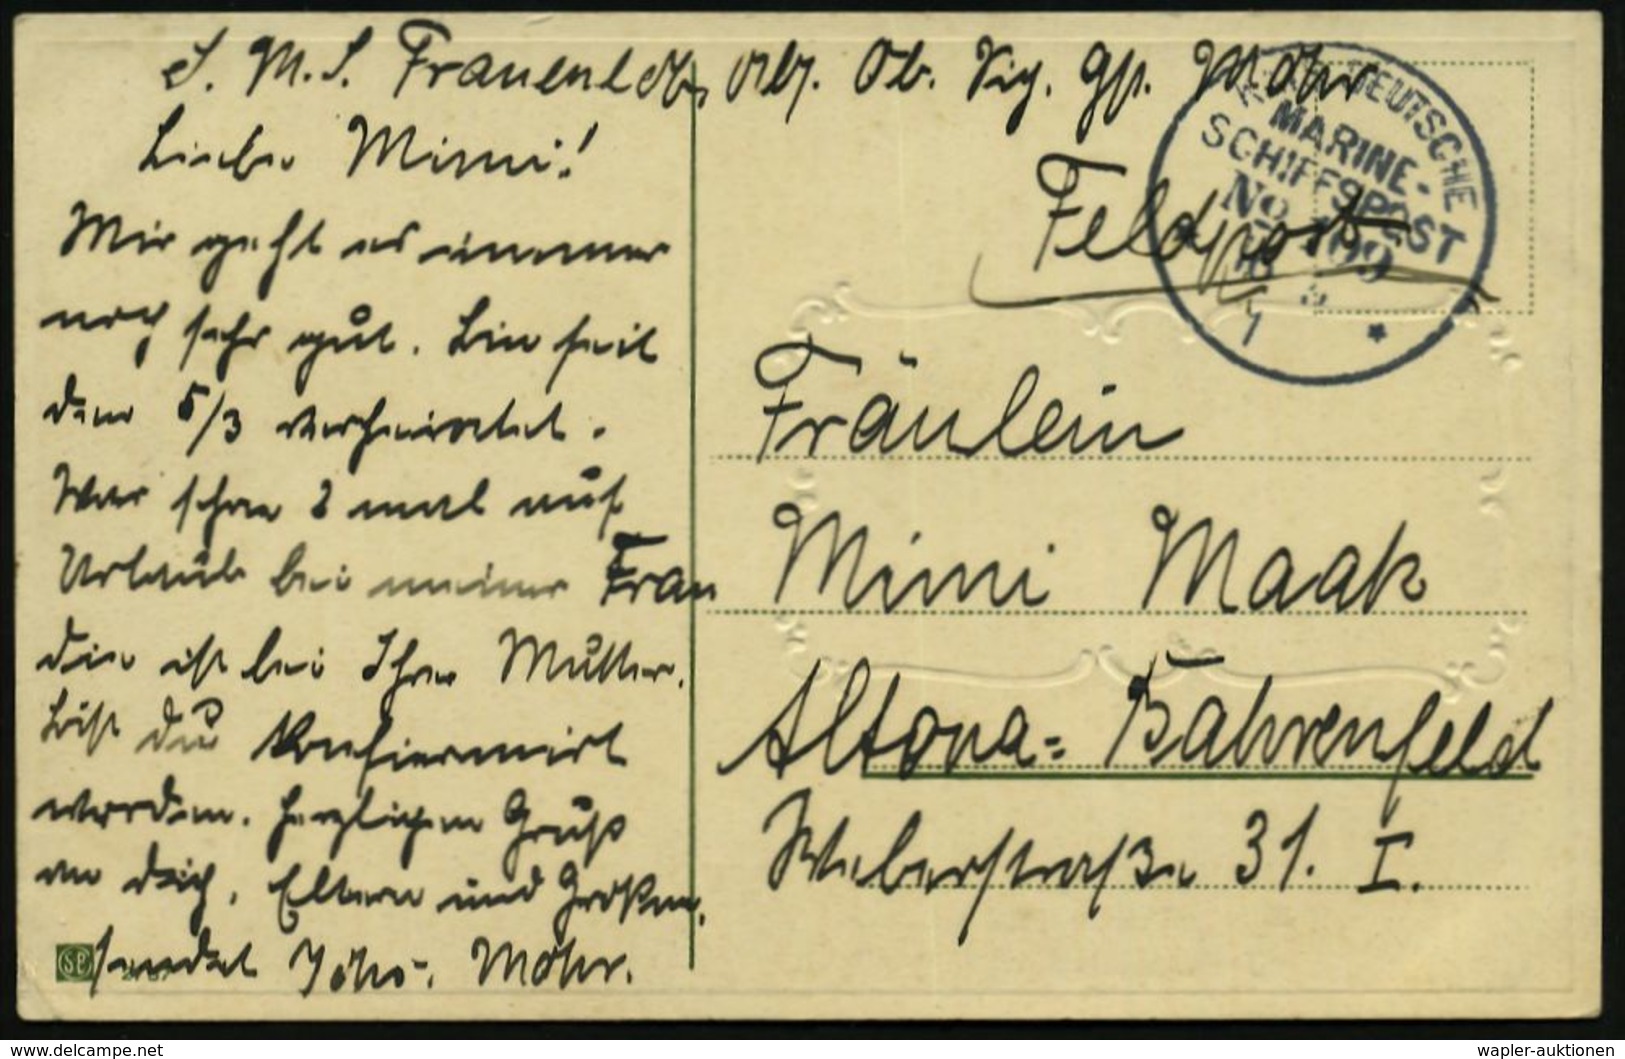 DEUTSCHES REICH 1915 (18.5.) 1K-BPA: KAIS. DEUTSCHE/MARINE-/SCHIFFSPOST/No. 109 = S.M.S. "Frauenlob", Kleiner Kreuzer, A - Marítimo